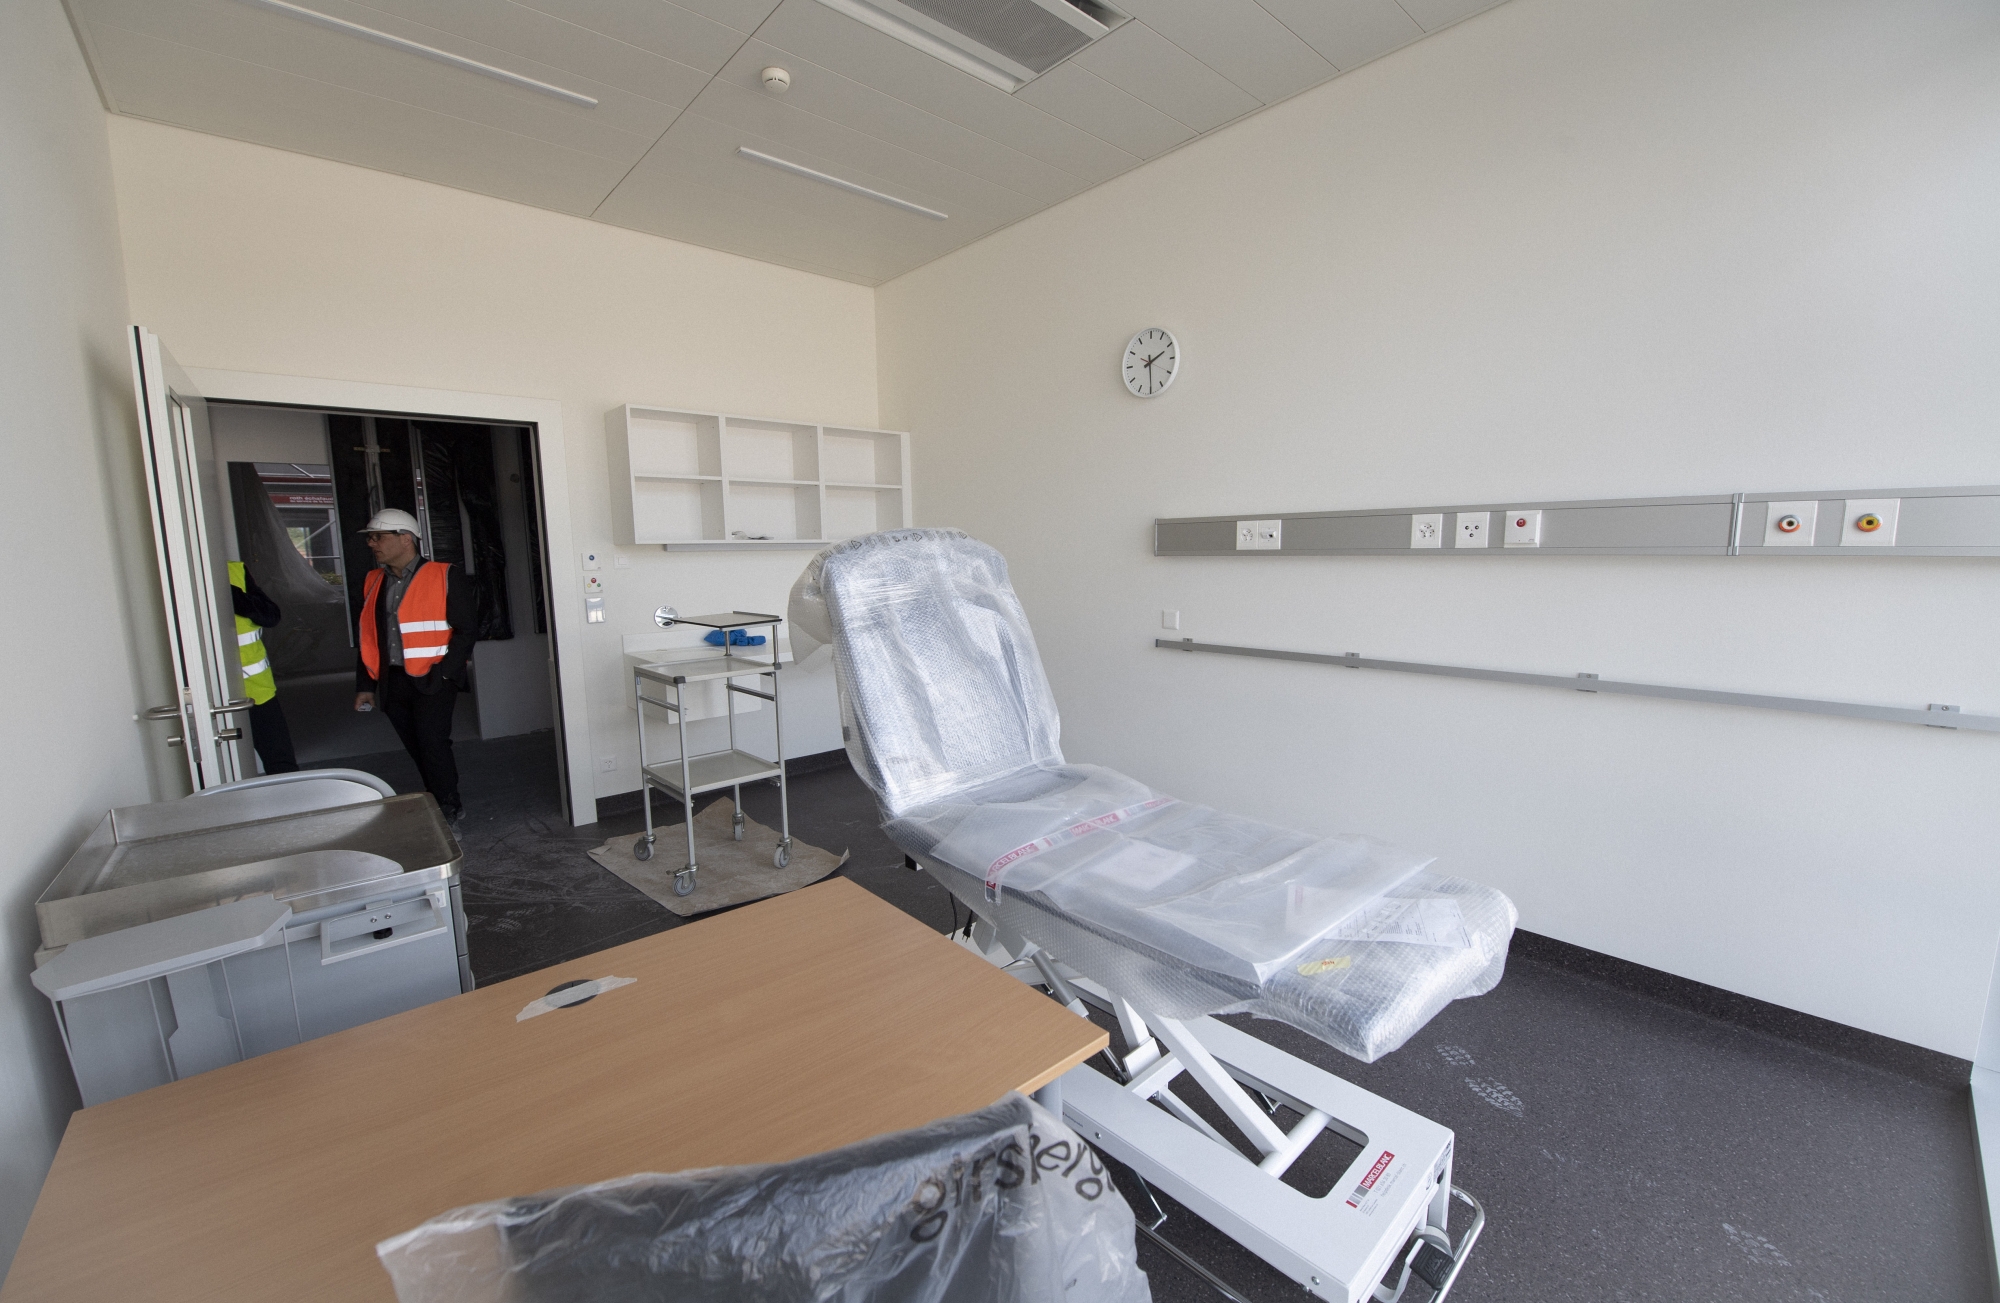 L'Hôpital Riviera-Chablais va prendre ses quartiers à Rennaz cette année.